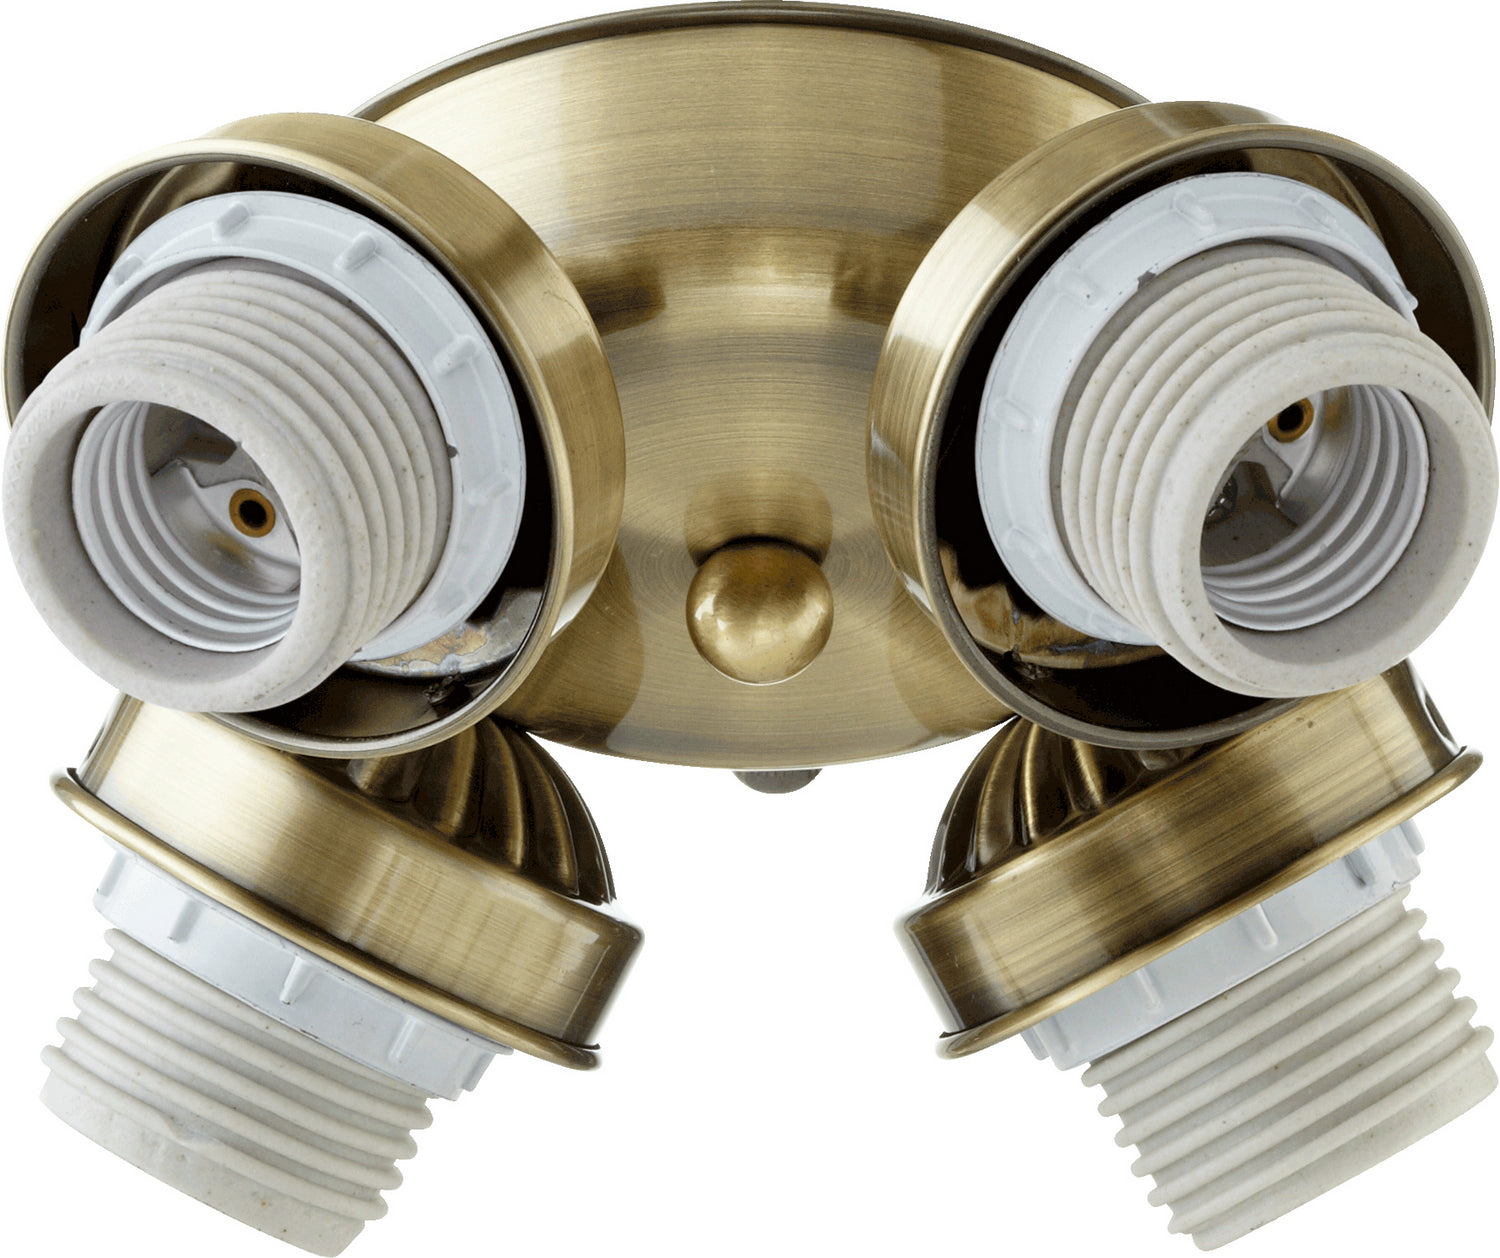 Quorum - 2401-804 - LED Fan Light Kit - 2401 Light Kits - Antique Brass